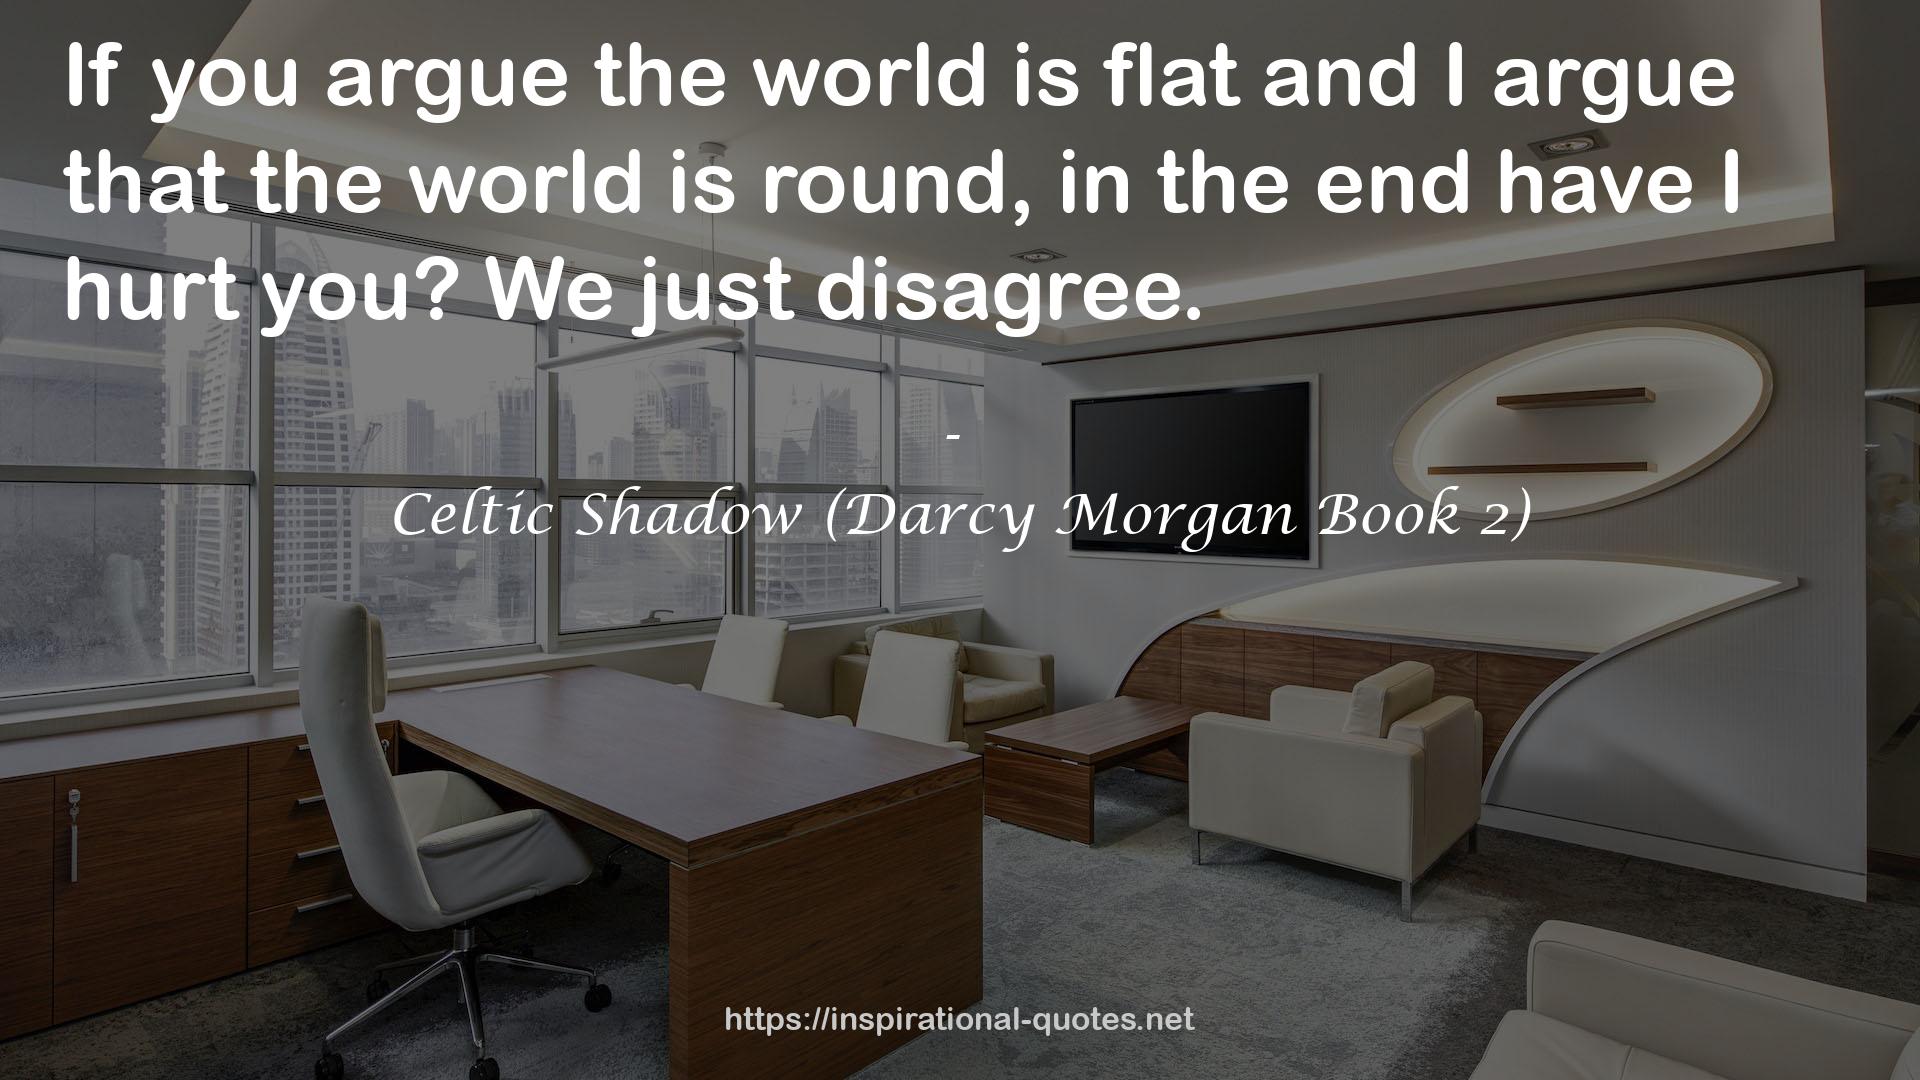 Celtic Shadow (Darcy Morgan Book 2) QUOTES